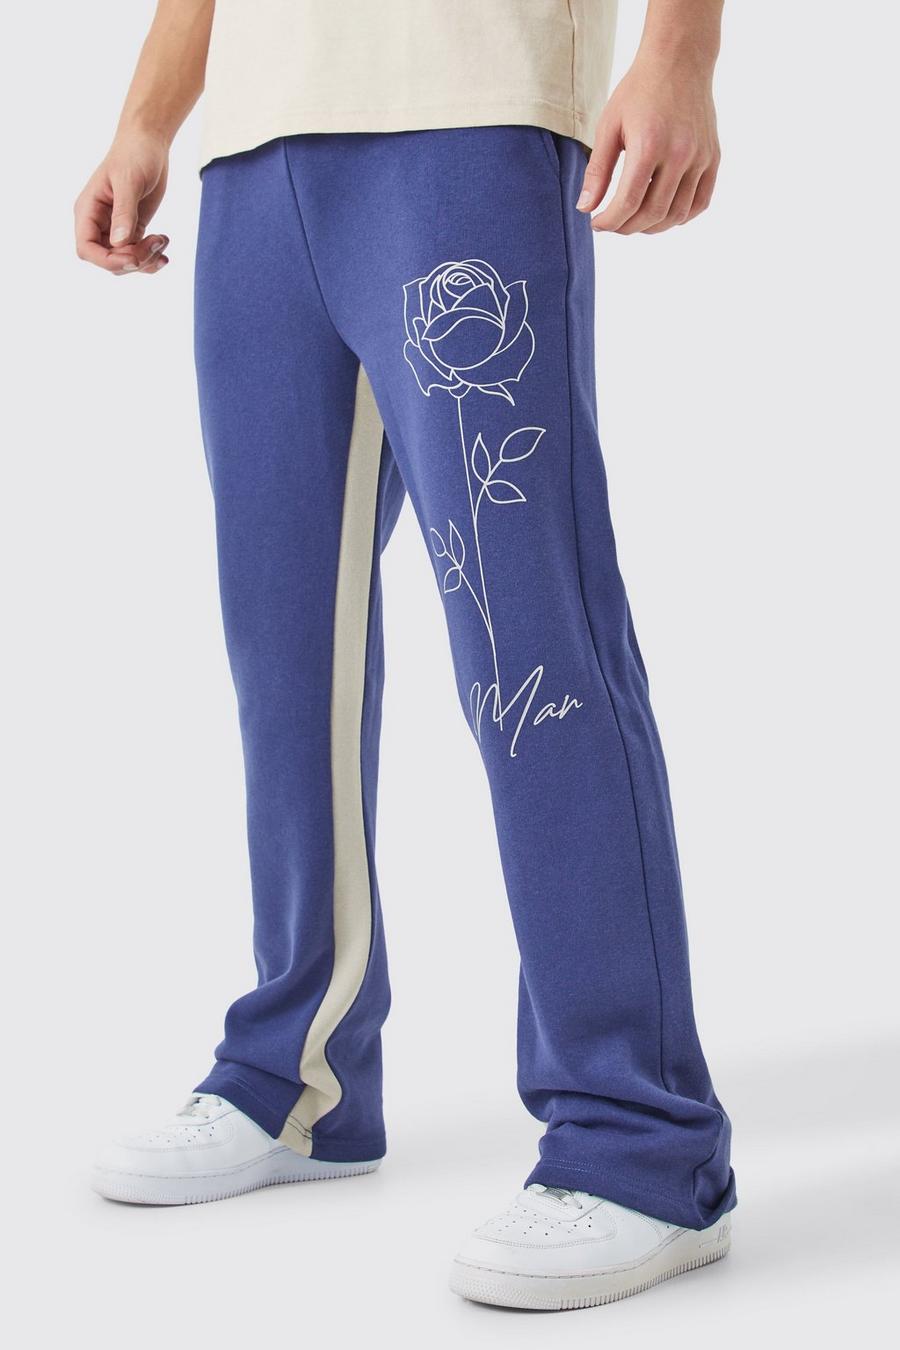 Pantalón deportivo MAN con refuerzo y estampado de rosas, Slate blue